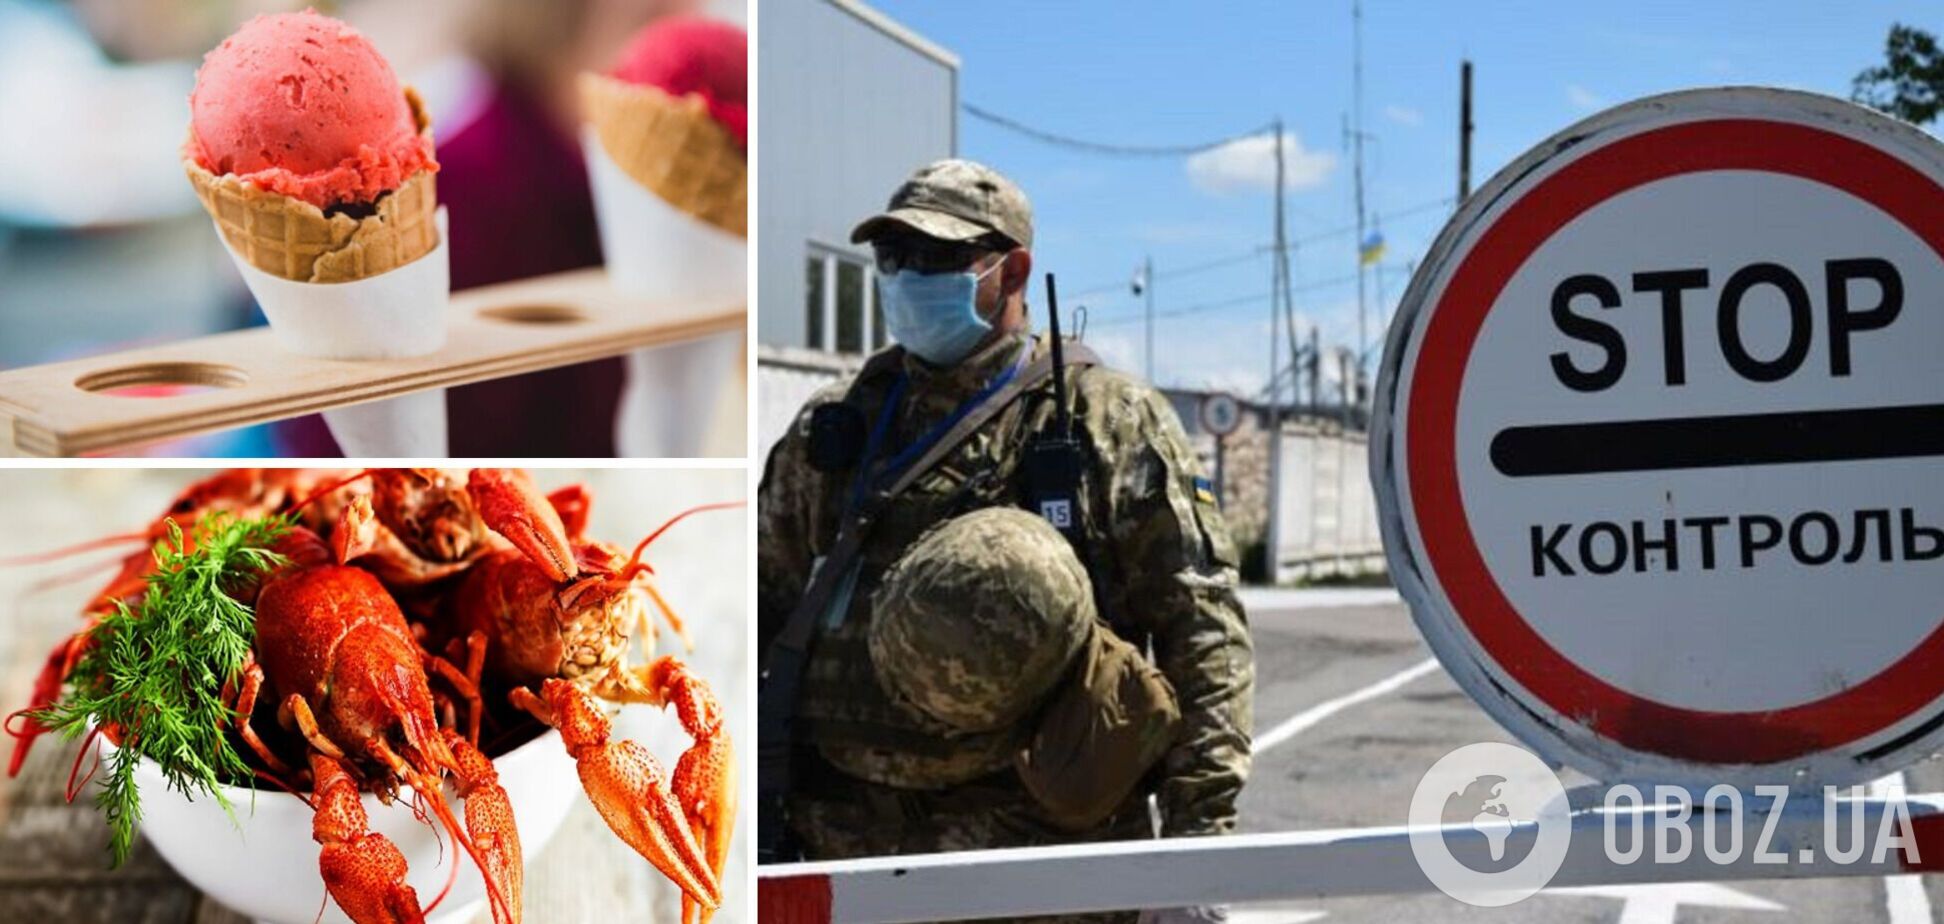 Росія заборонила ввозити з України морозиво, 'газбульку' та раки: які ще продукти потрапили під санкції